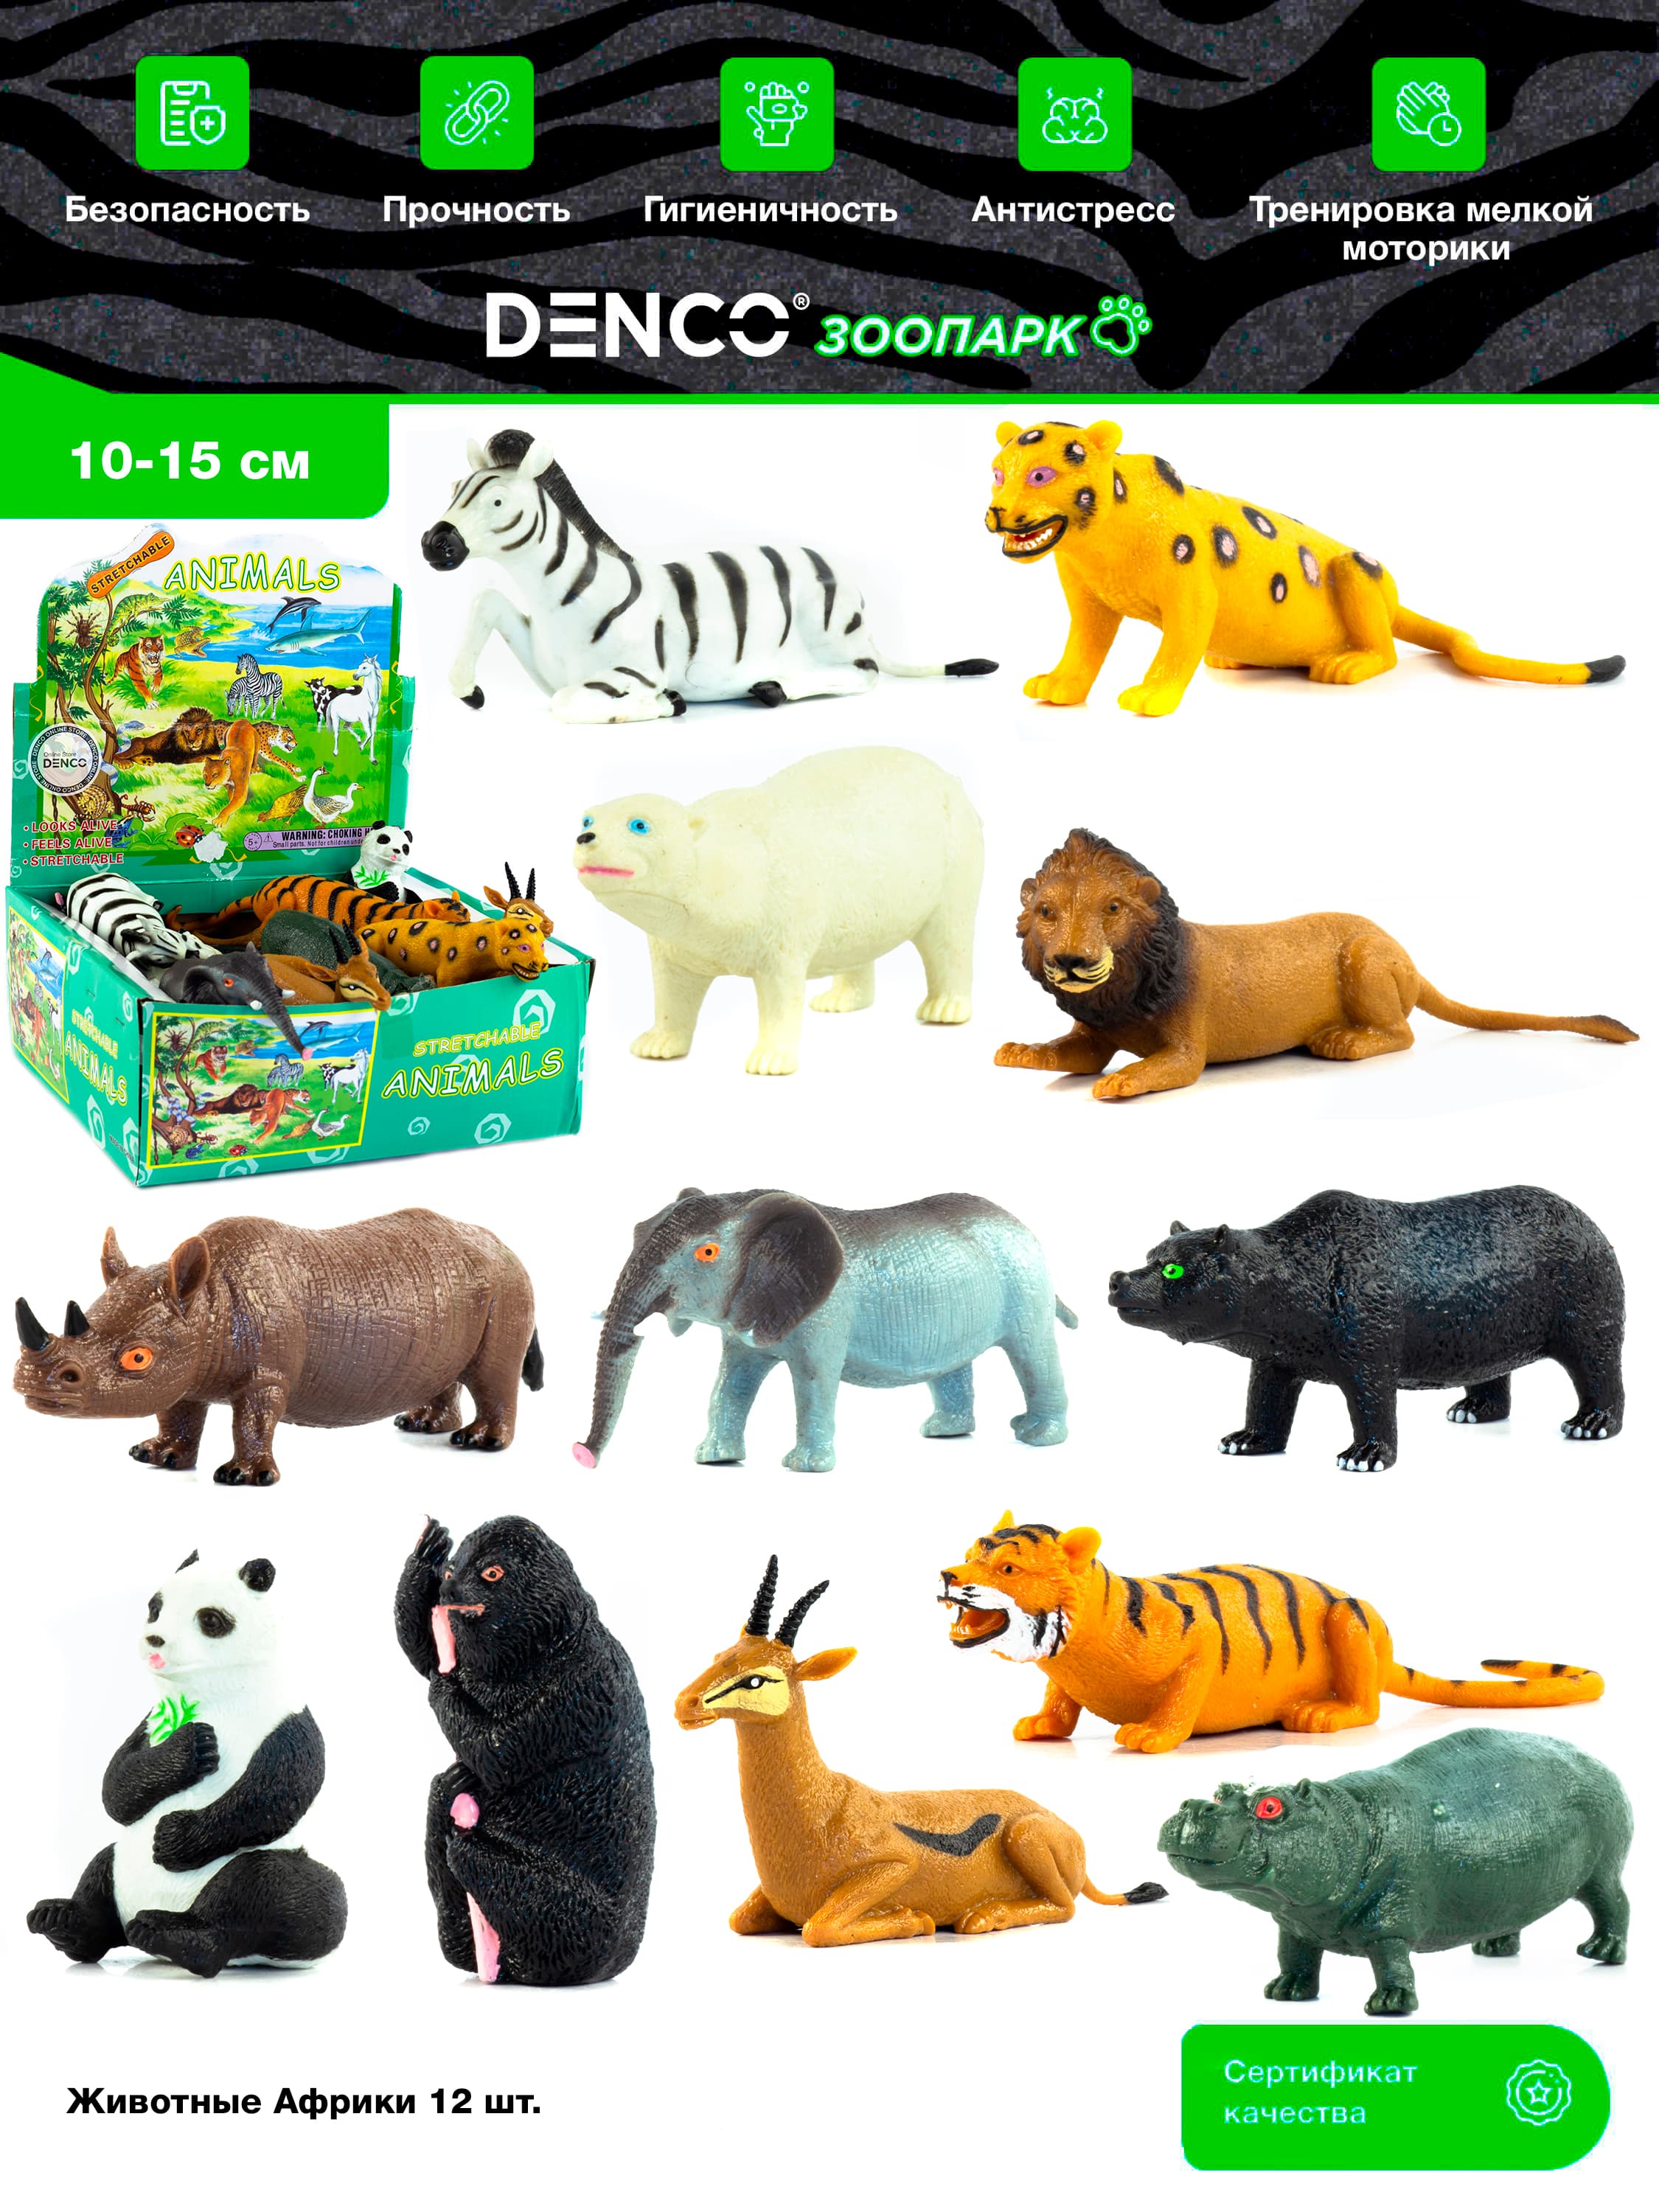 Игры, игрушки, пособия и карточки о диких животных - купить в интернет-магазине Игросити